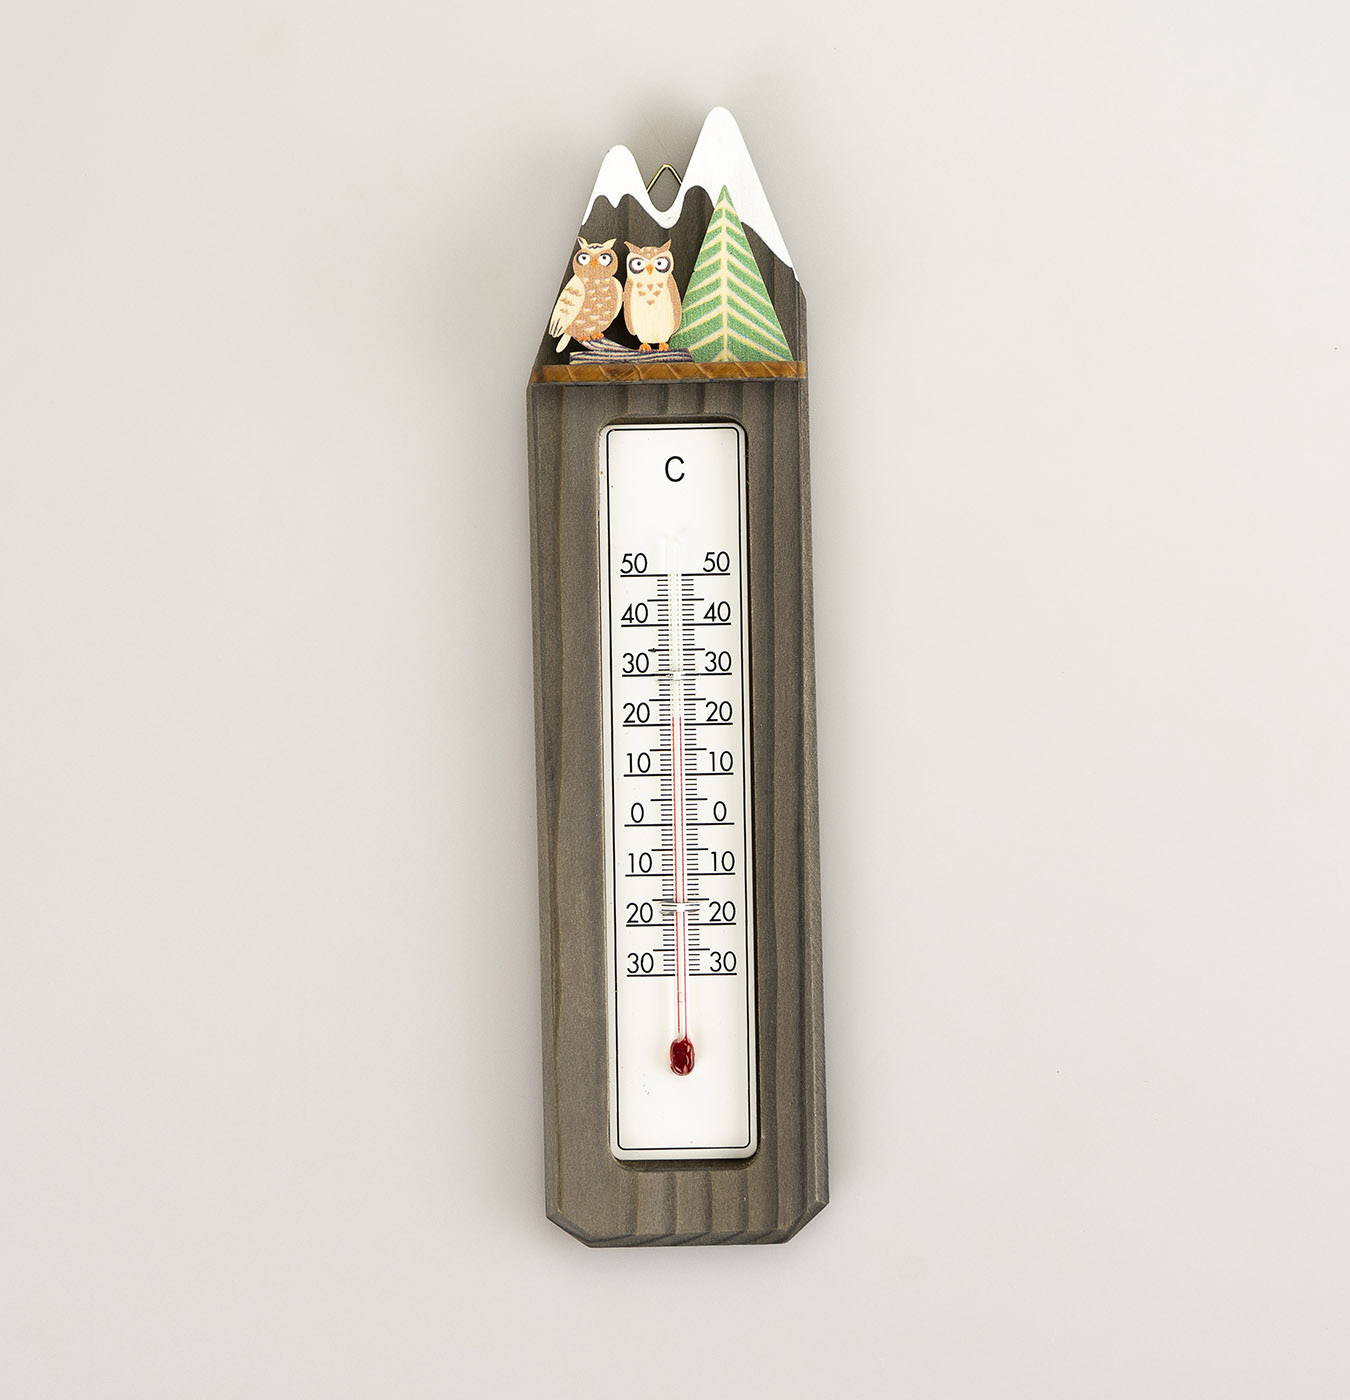 Termometro con applicazioni in legno di abete.